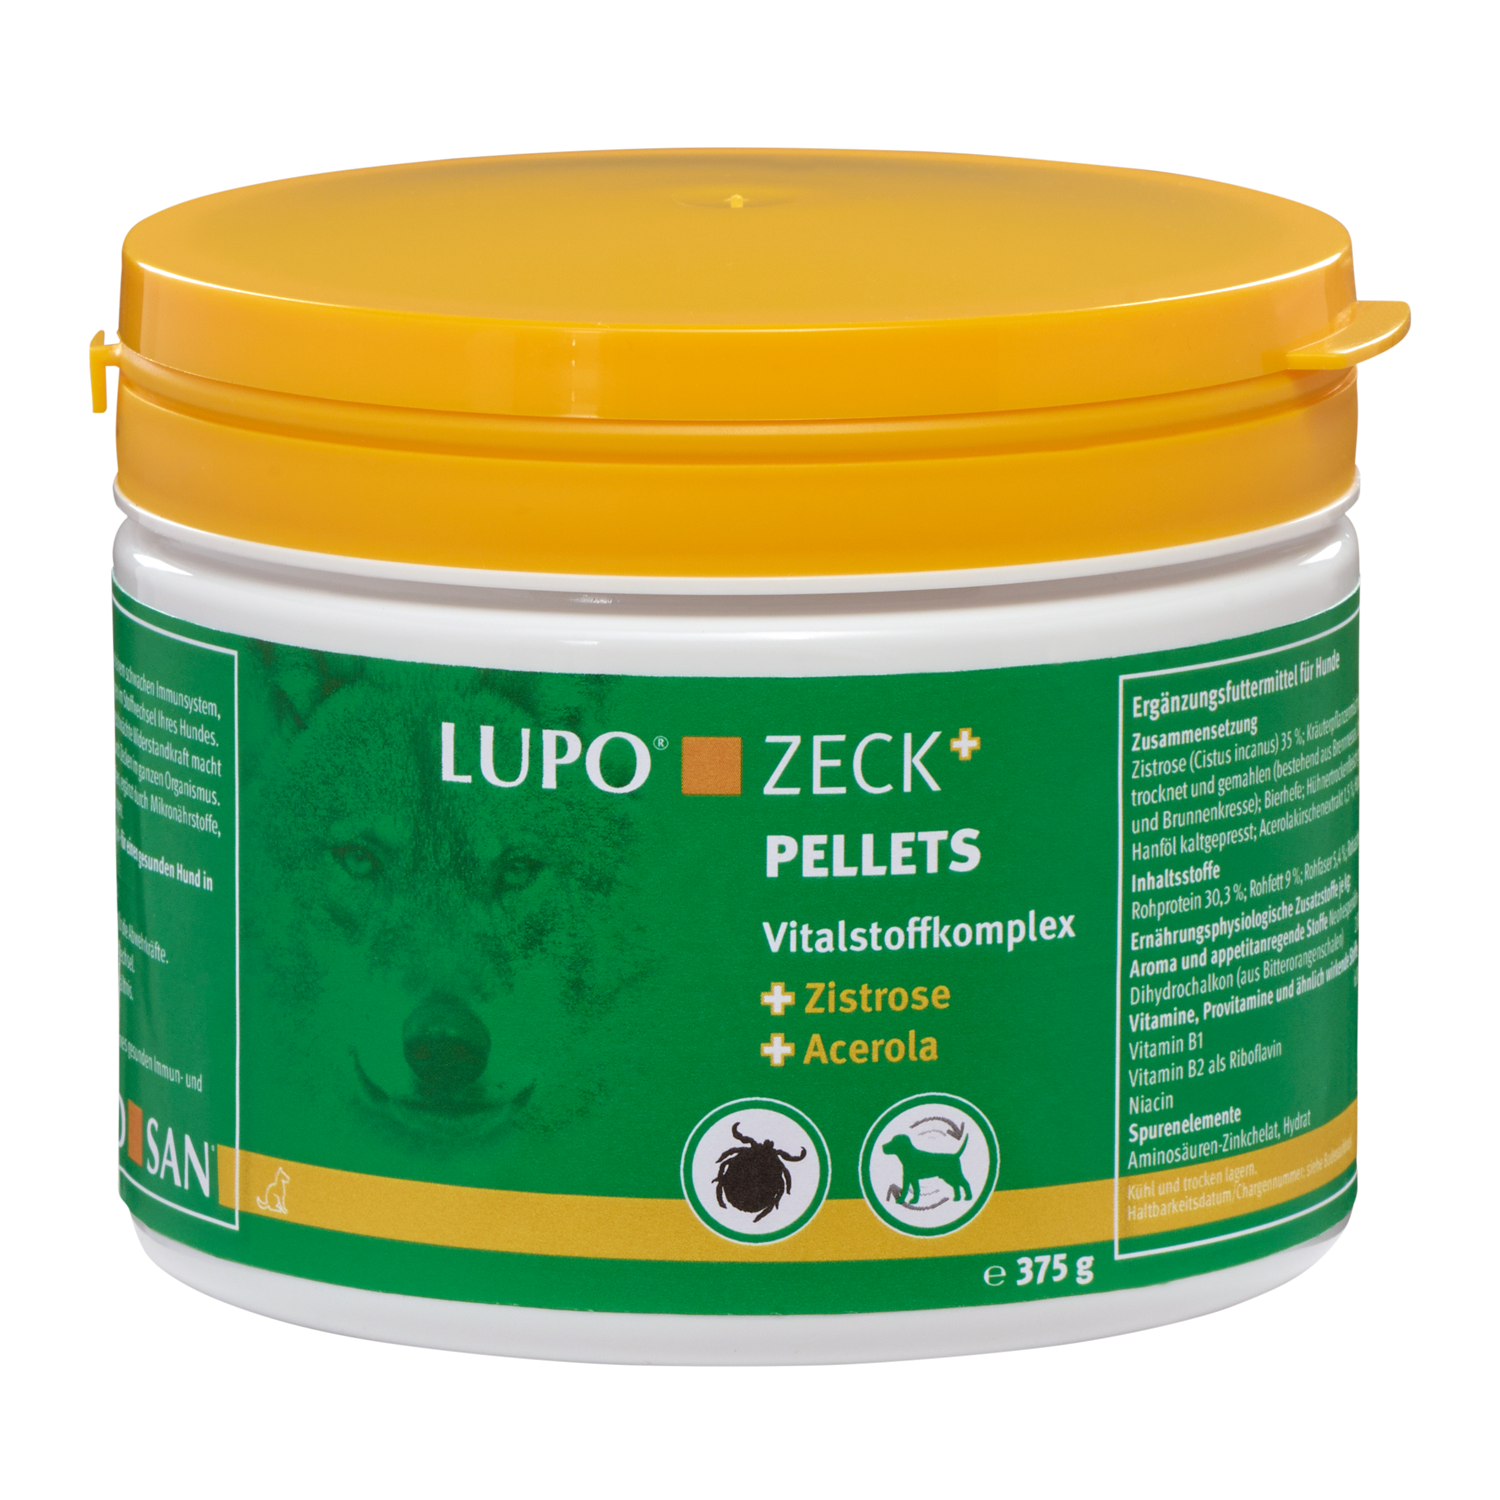 LUPO ZECK+ 375 g